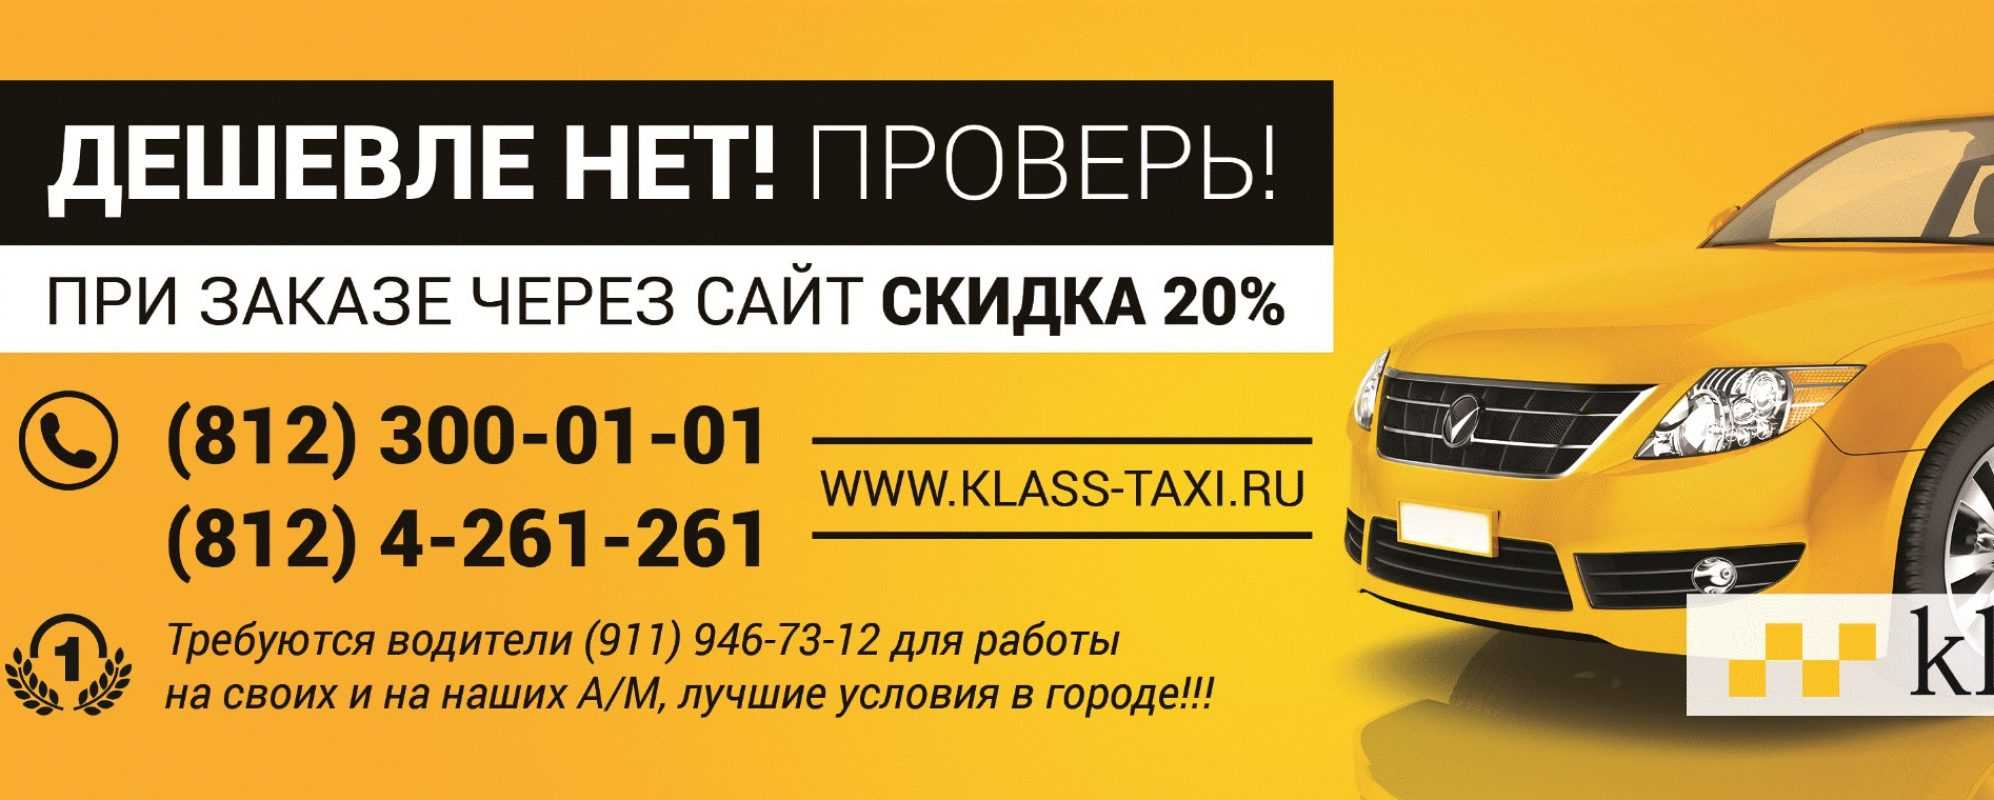 Вызвать такси дешево телефон. Самое дешёвое такси. Вызов такси. Самое дешевое такси в Москве. Самое дешевое такси номер.